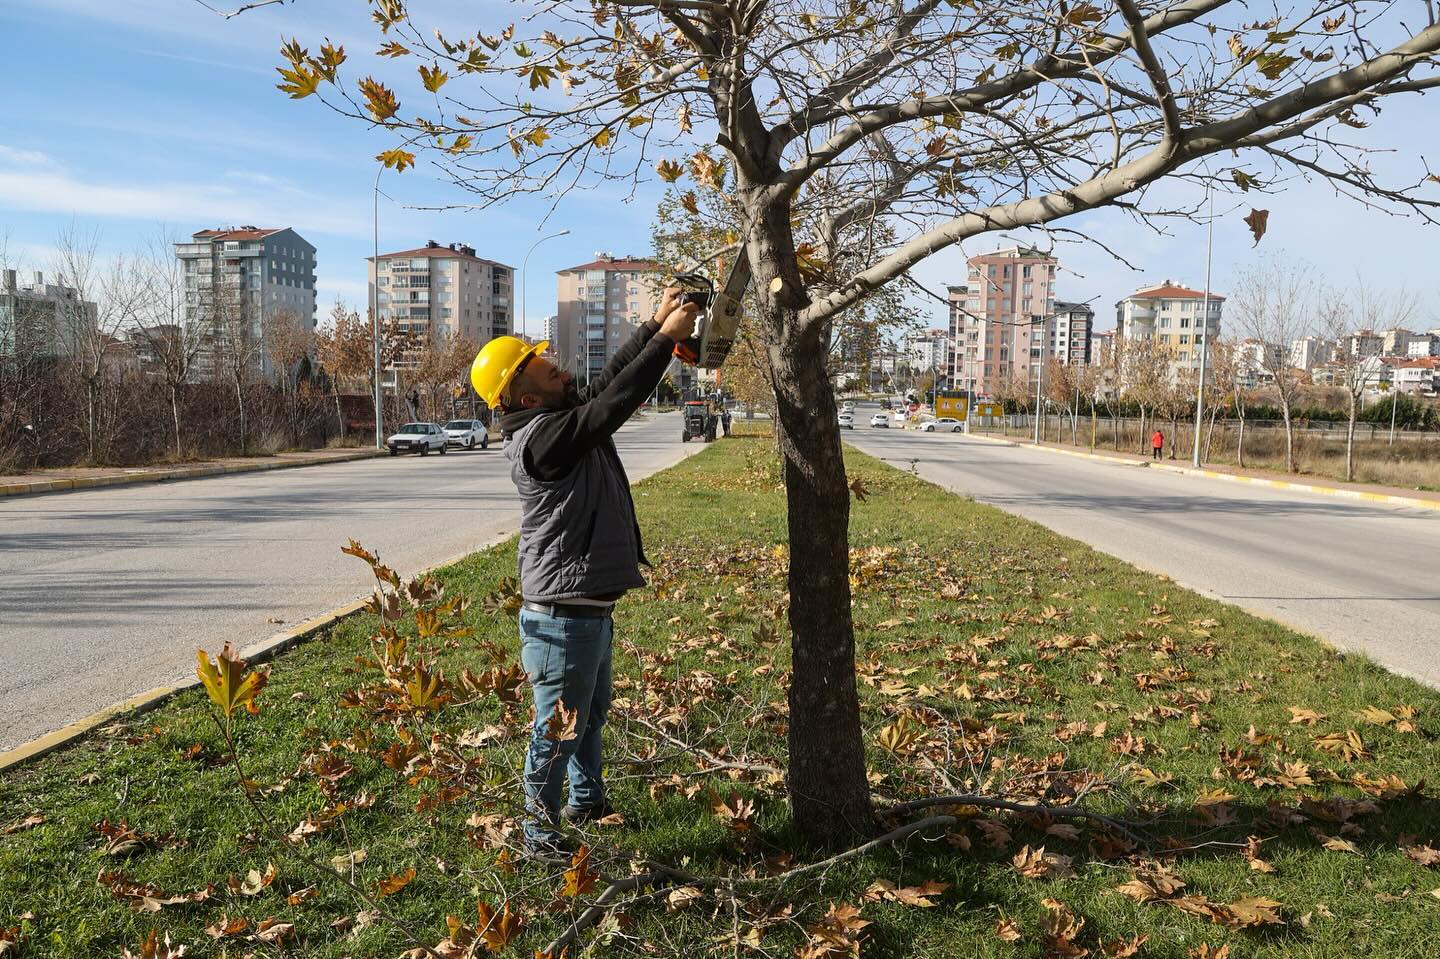 Uşak Belediyesi, ağaçların bakım ve budama çalışmalarını sürdürüyor